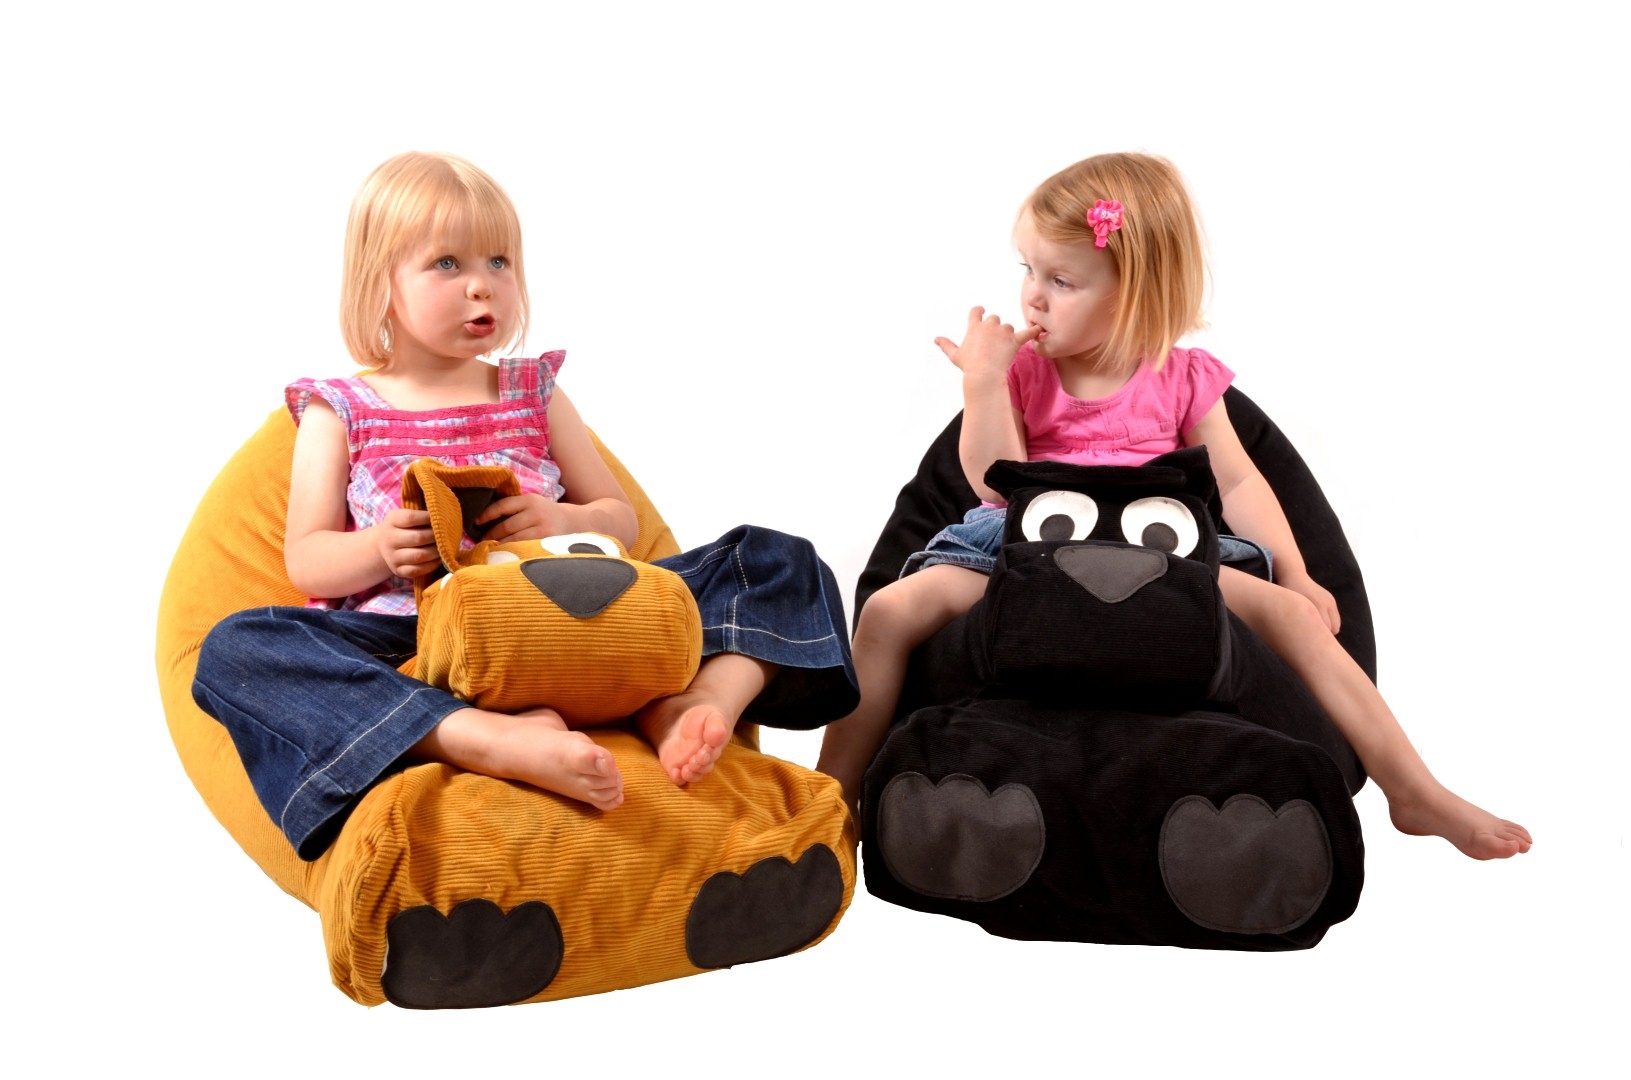 Мягкой посадки! кресло-мешок — теперь необходимый предмет в интерьере детской комнаты